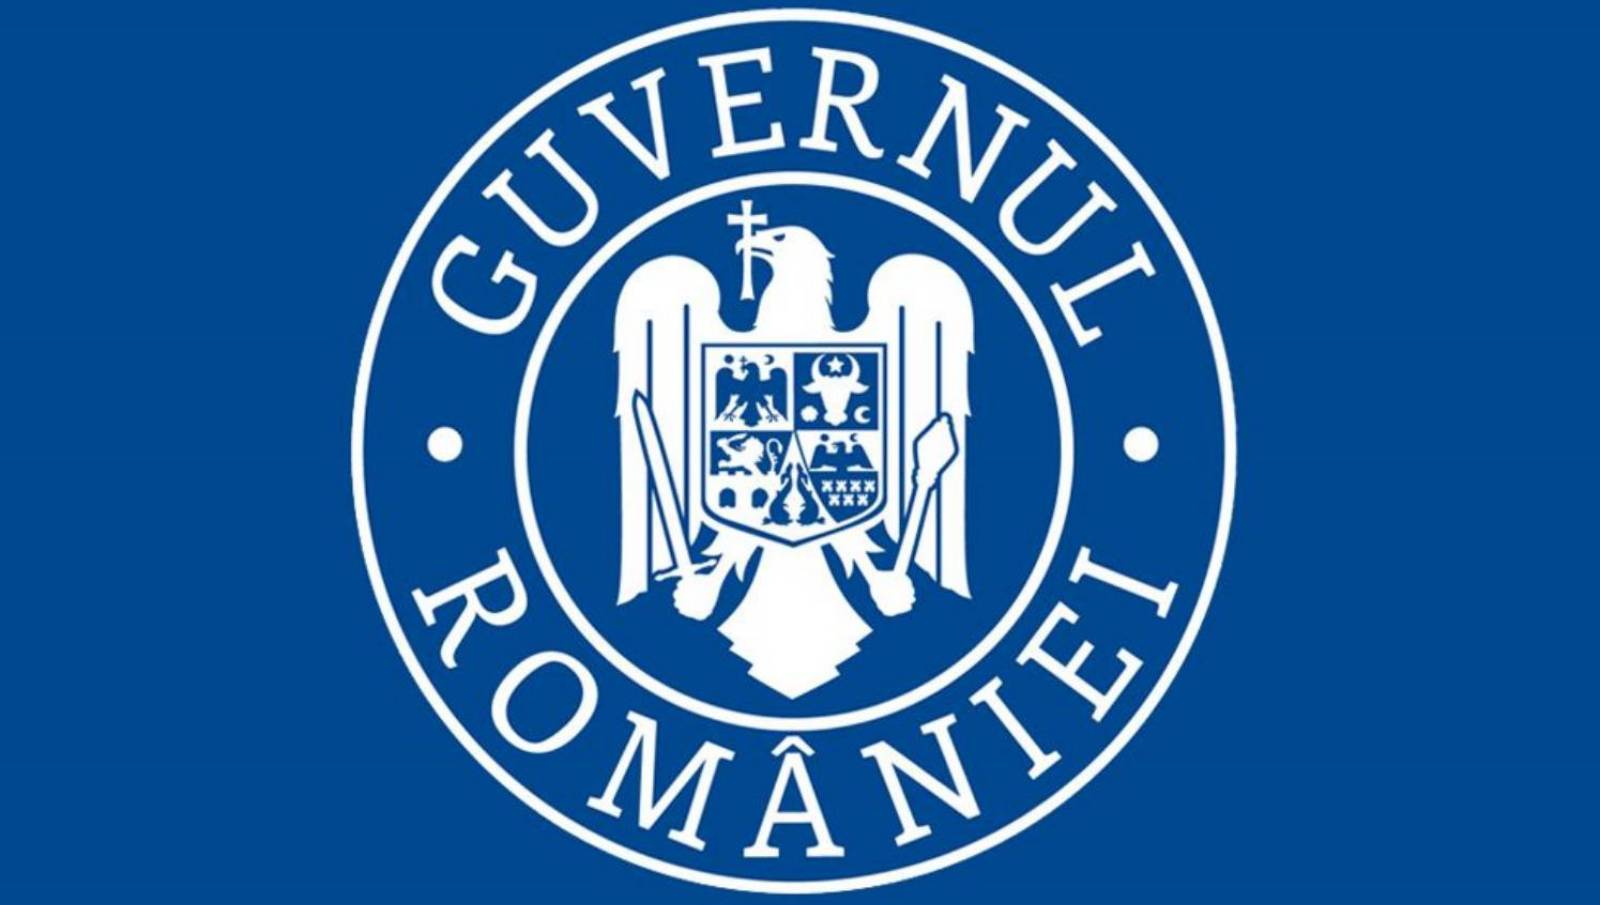 De Roemeense overheid stuurt informatie per telefoon